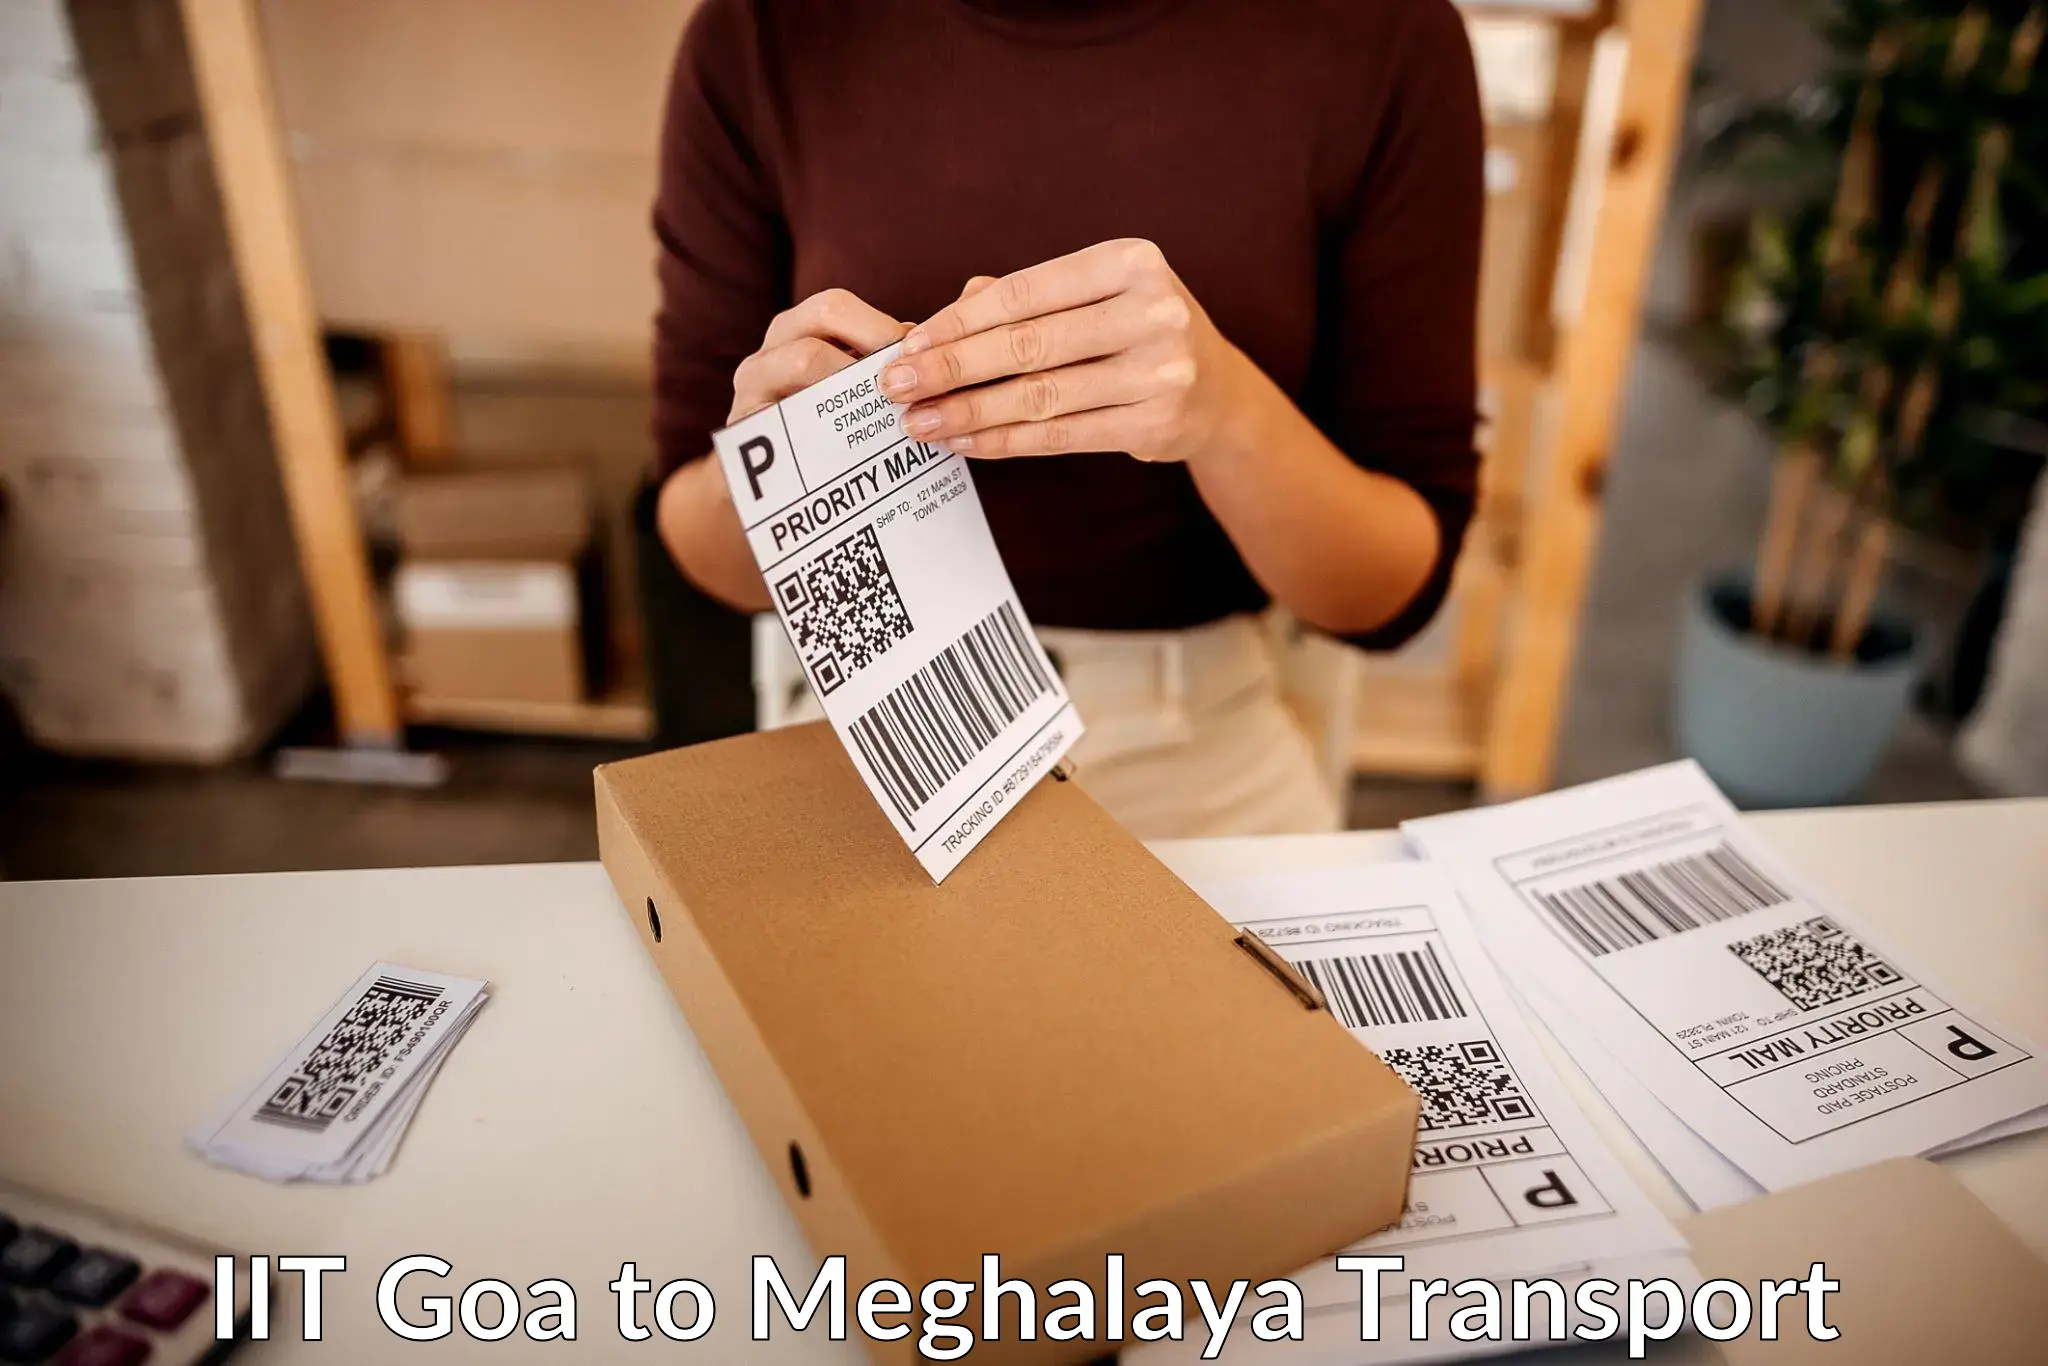 Cargo transportation services IIT Goa to Shillong